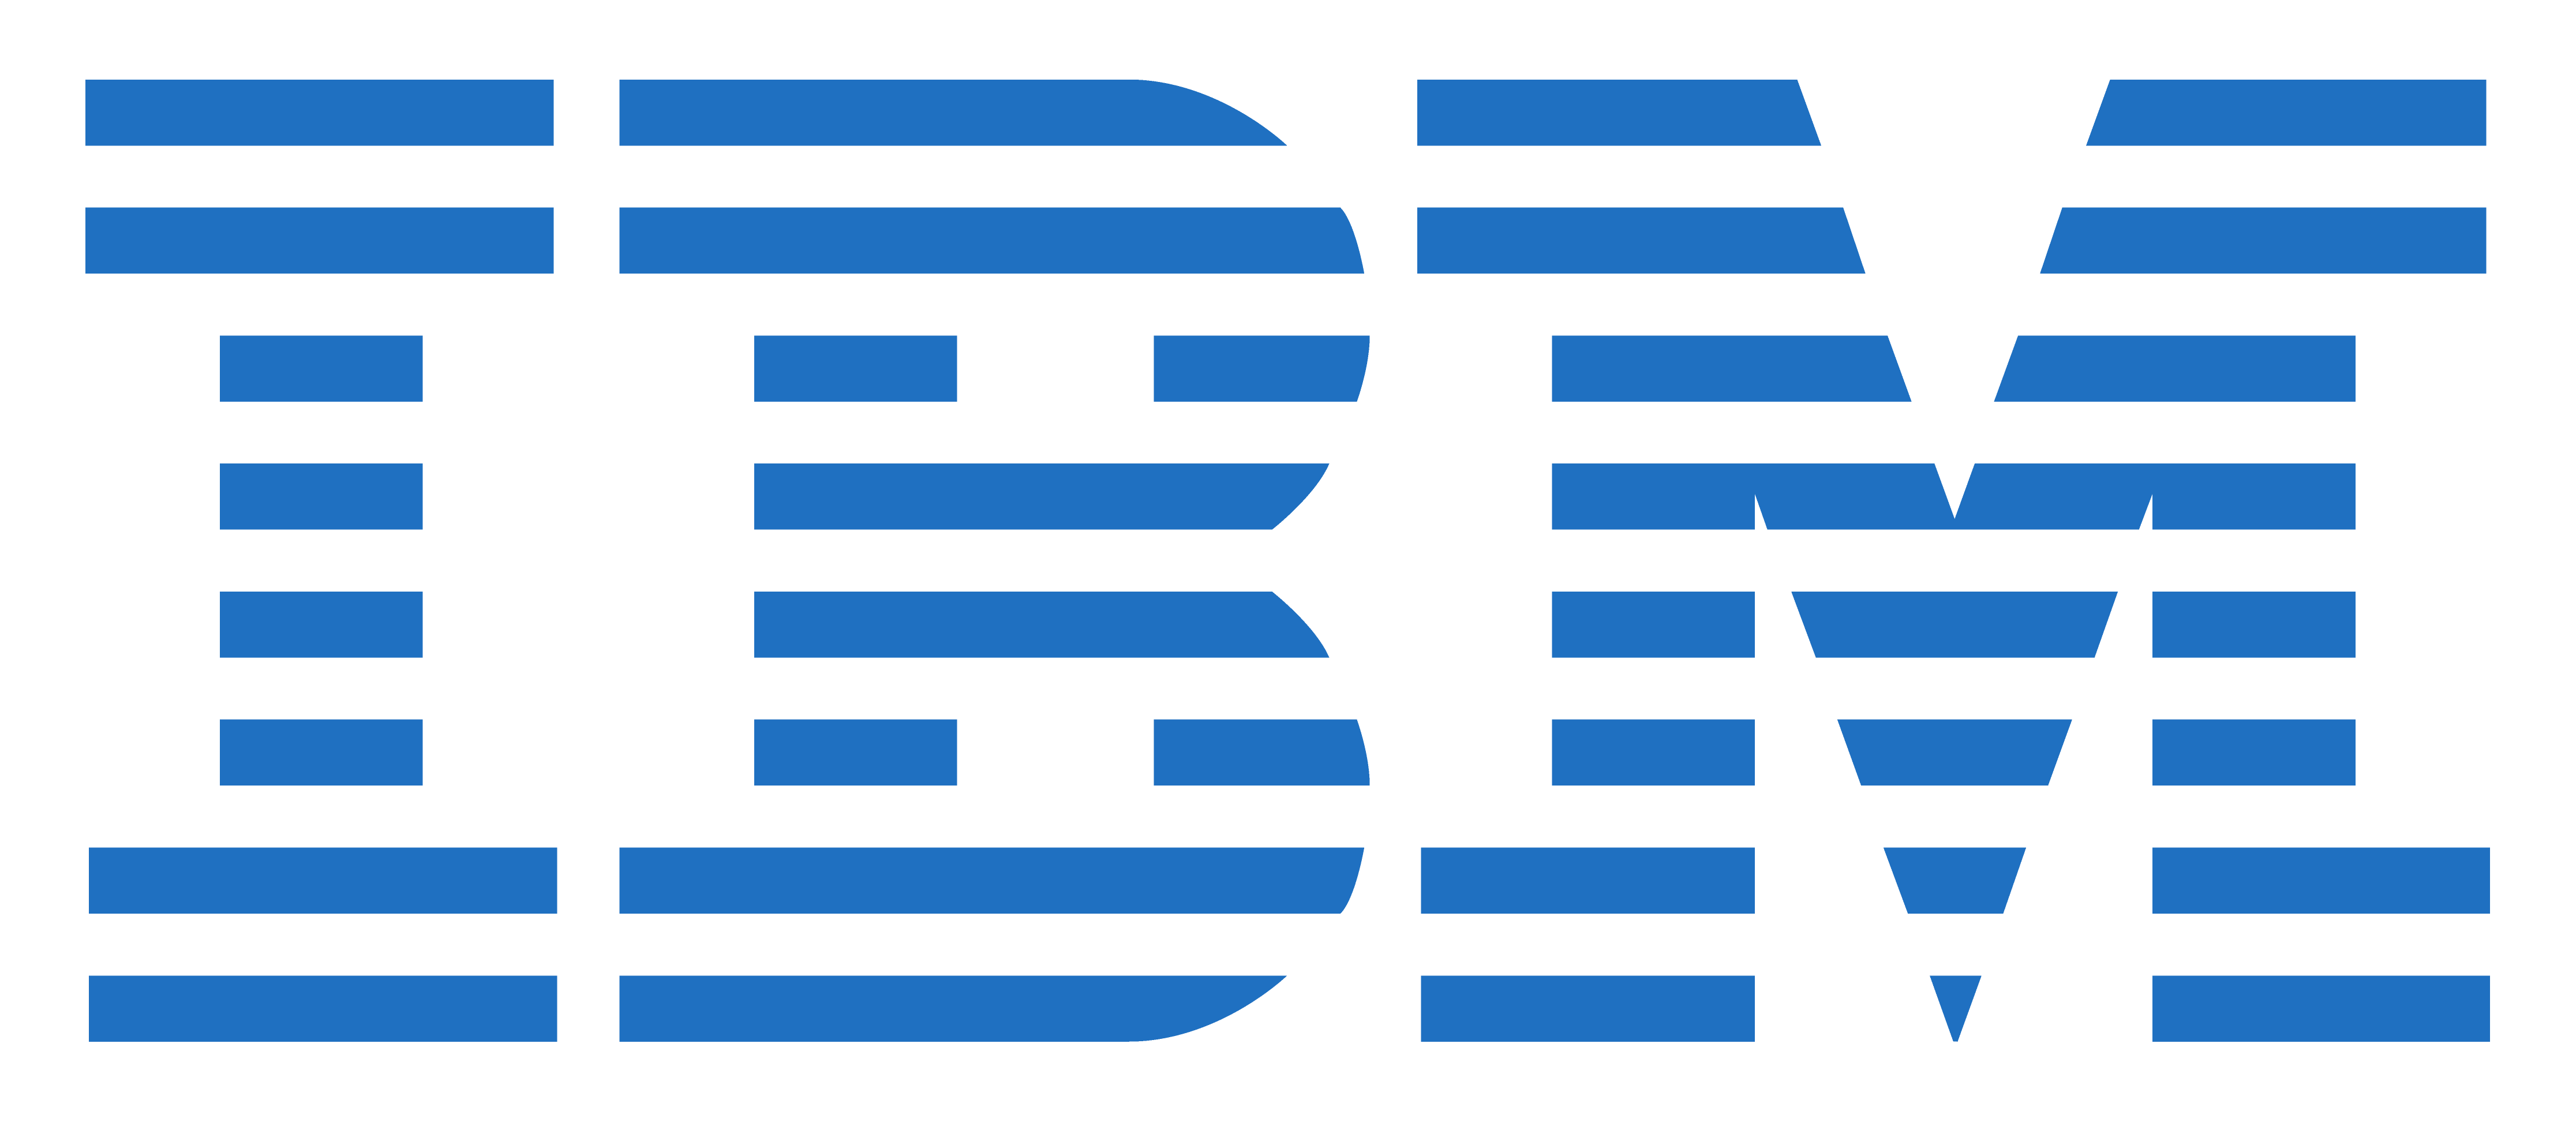 1956 IBM Logo - IBM logos PNG images free download, IBM logo PNG